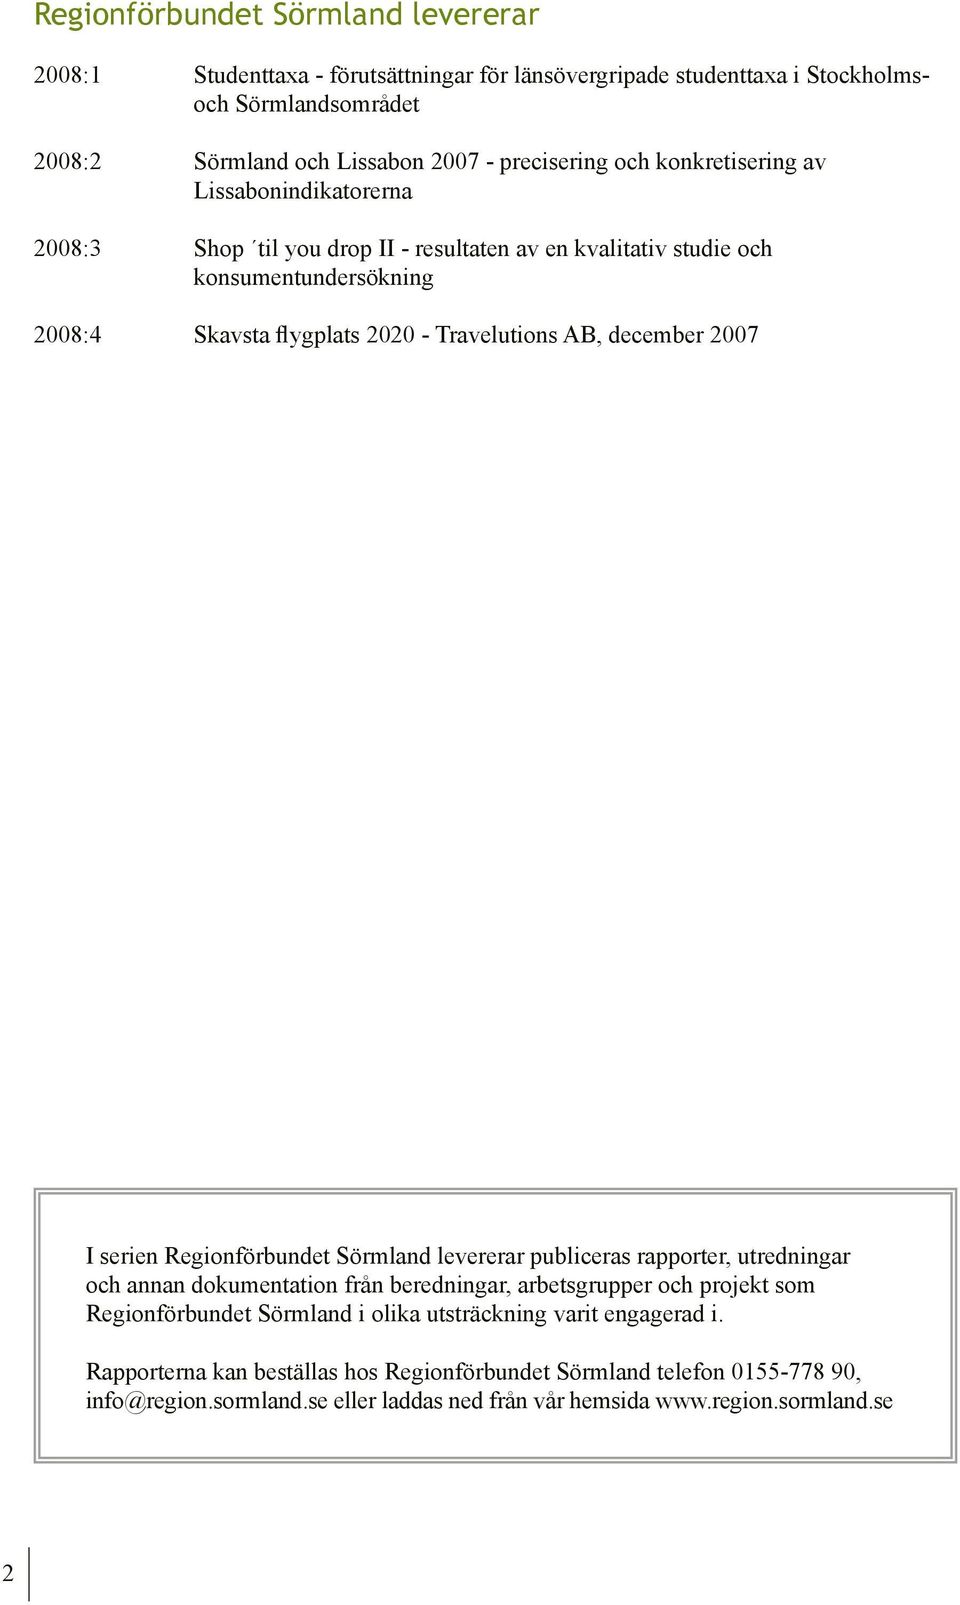 2007 I serien Regionförbundet Sörmland levererar publiceras rapporter, utredningar och annan dokumentation från beredningar, arbetsgrupper och projekt som Regionförbundet Sörmland i olika